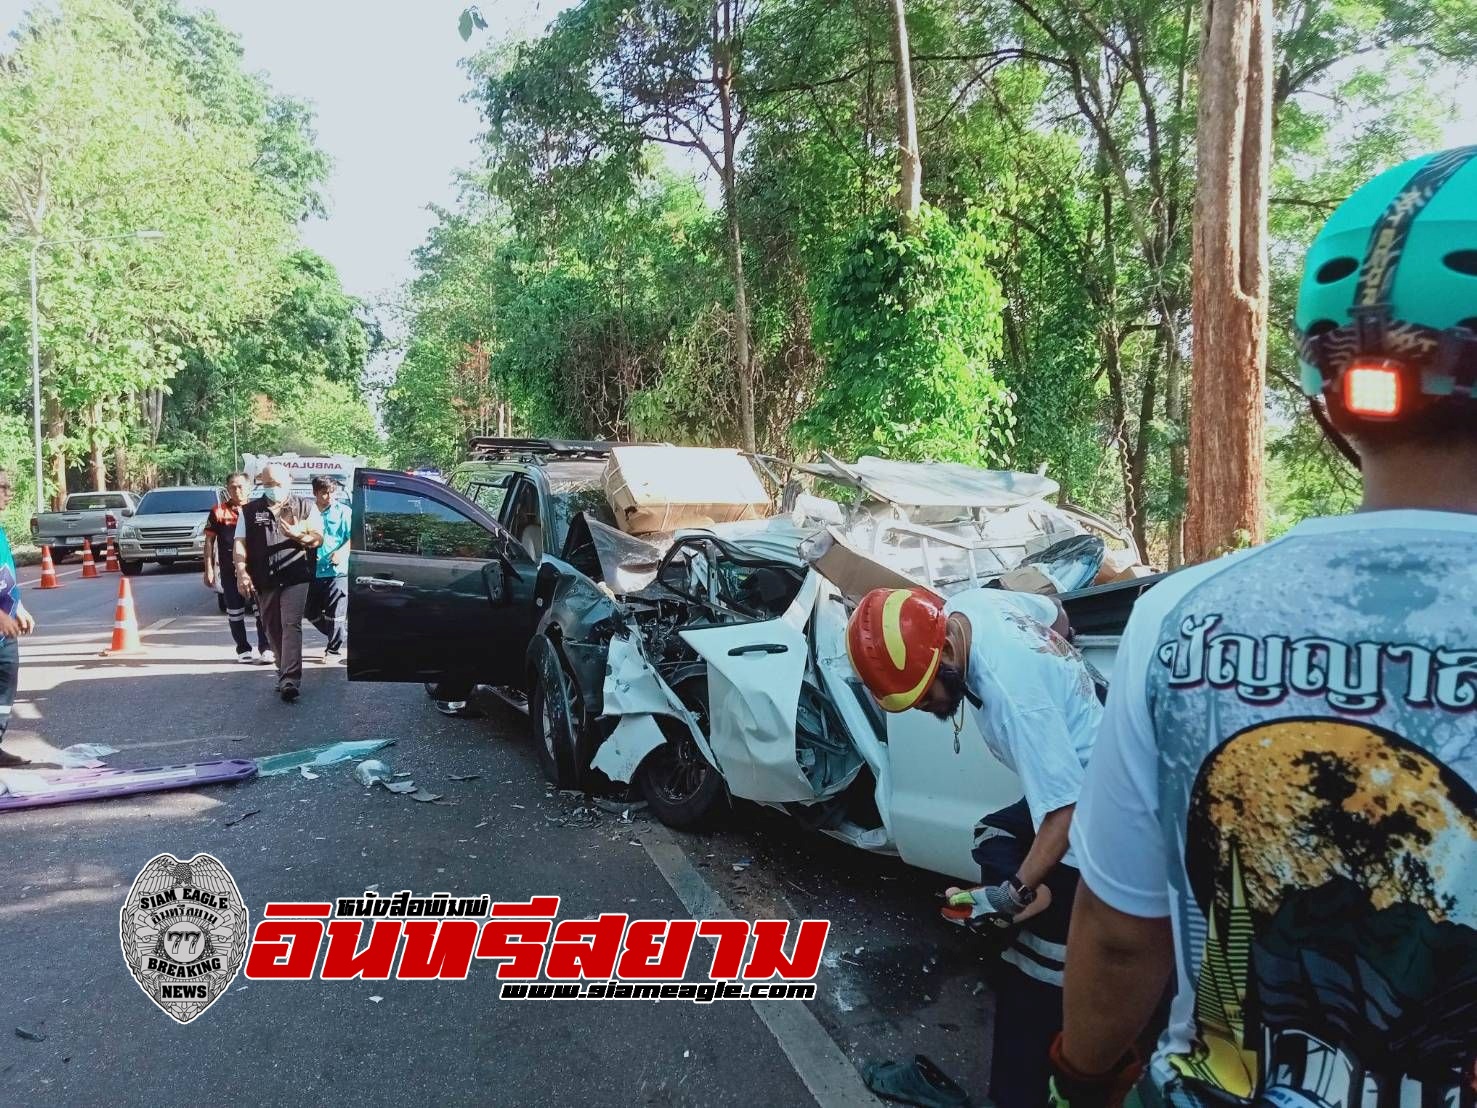 กาญจนบุรี-ท้องที่ อำเภอไทรโยค ได้ การเกิดอุบัติเหตุรถชนทำให้มีผู้เสียชีวิต จำนวน 3ราย